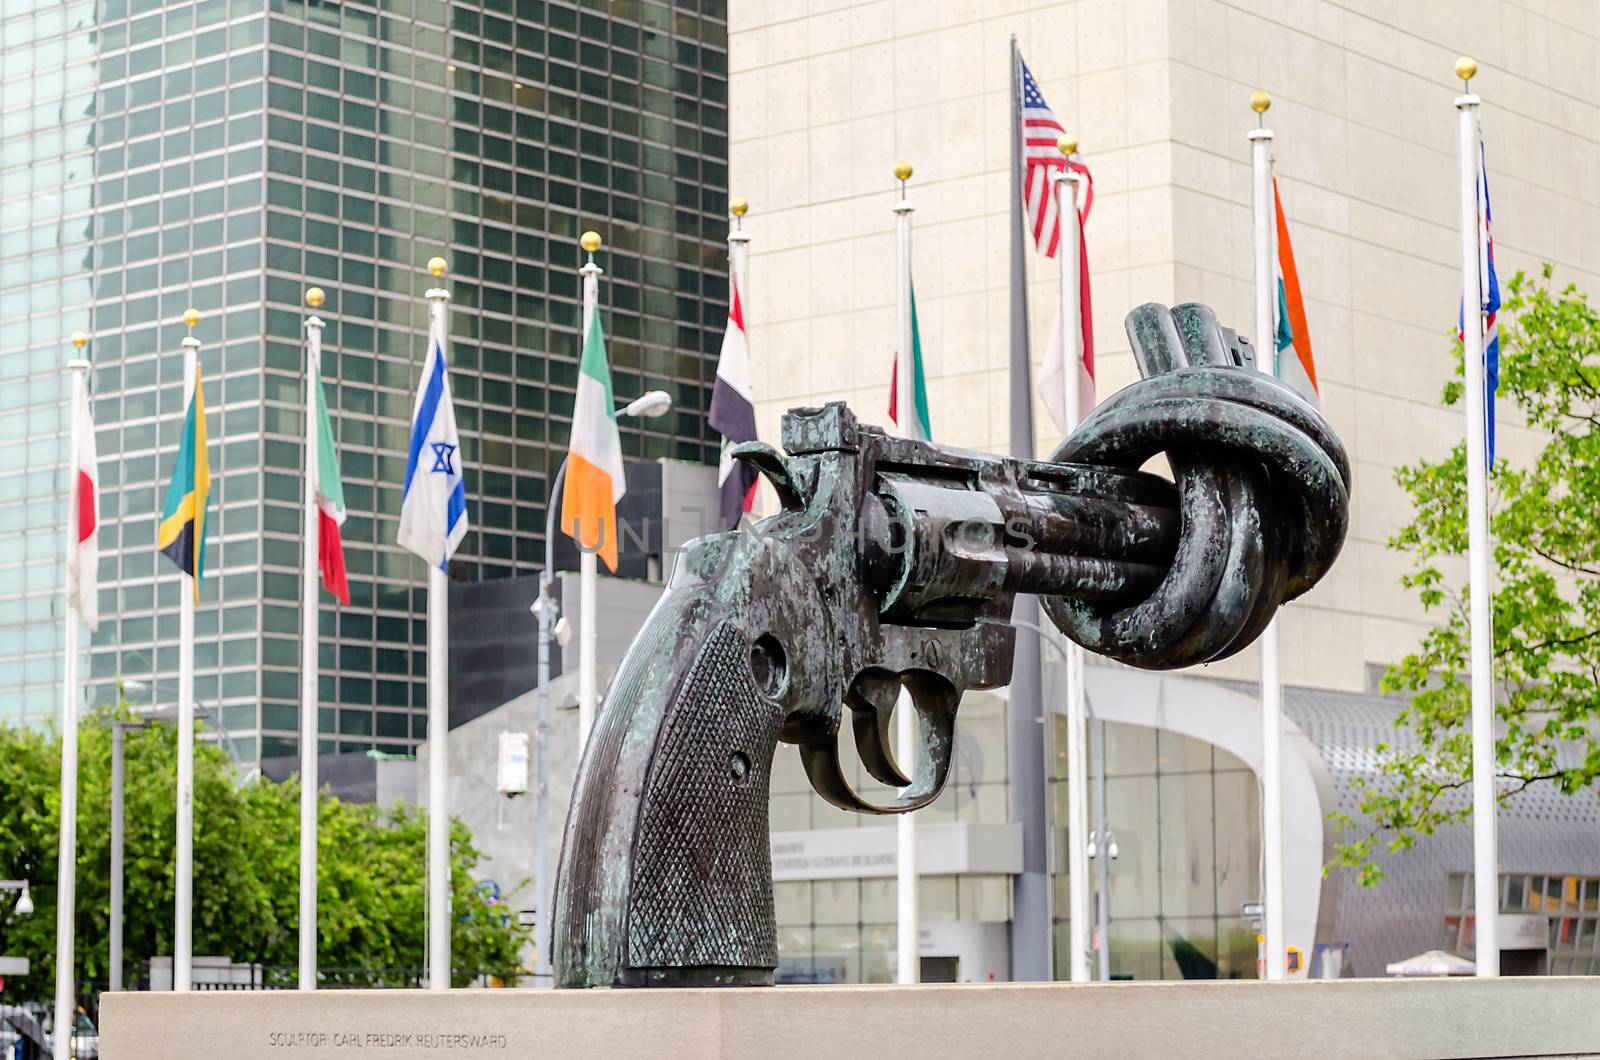 Non Violence Sculpture at UN by marcorubino